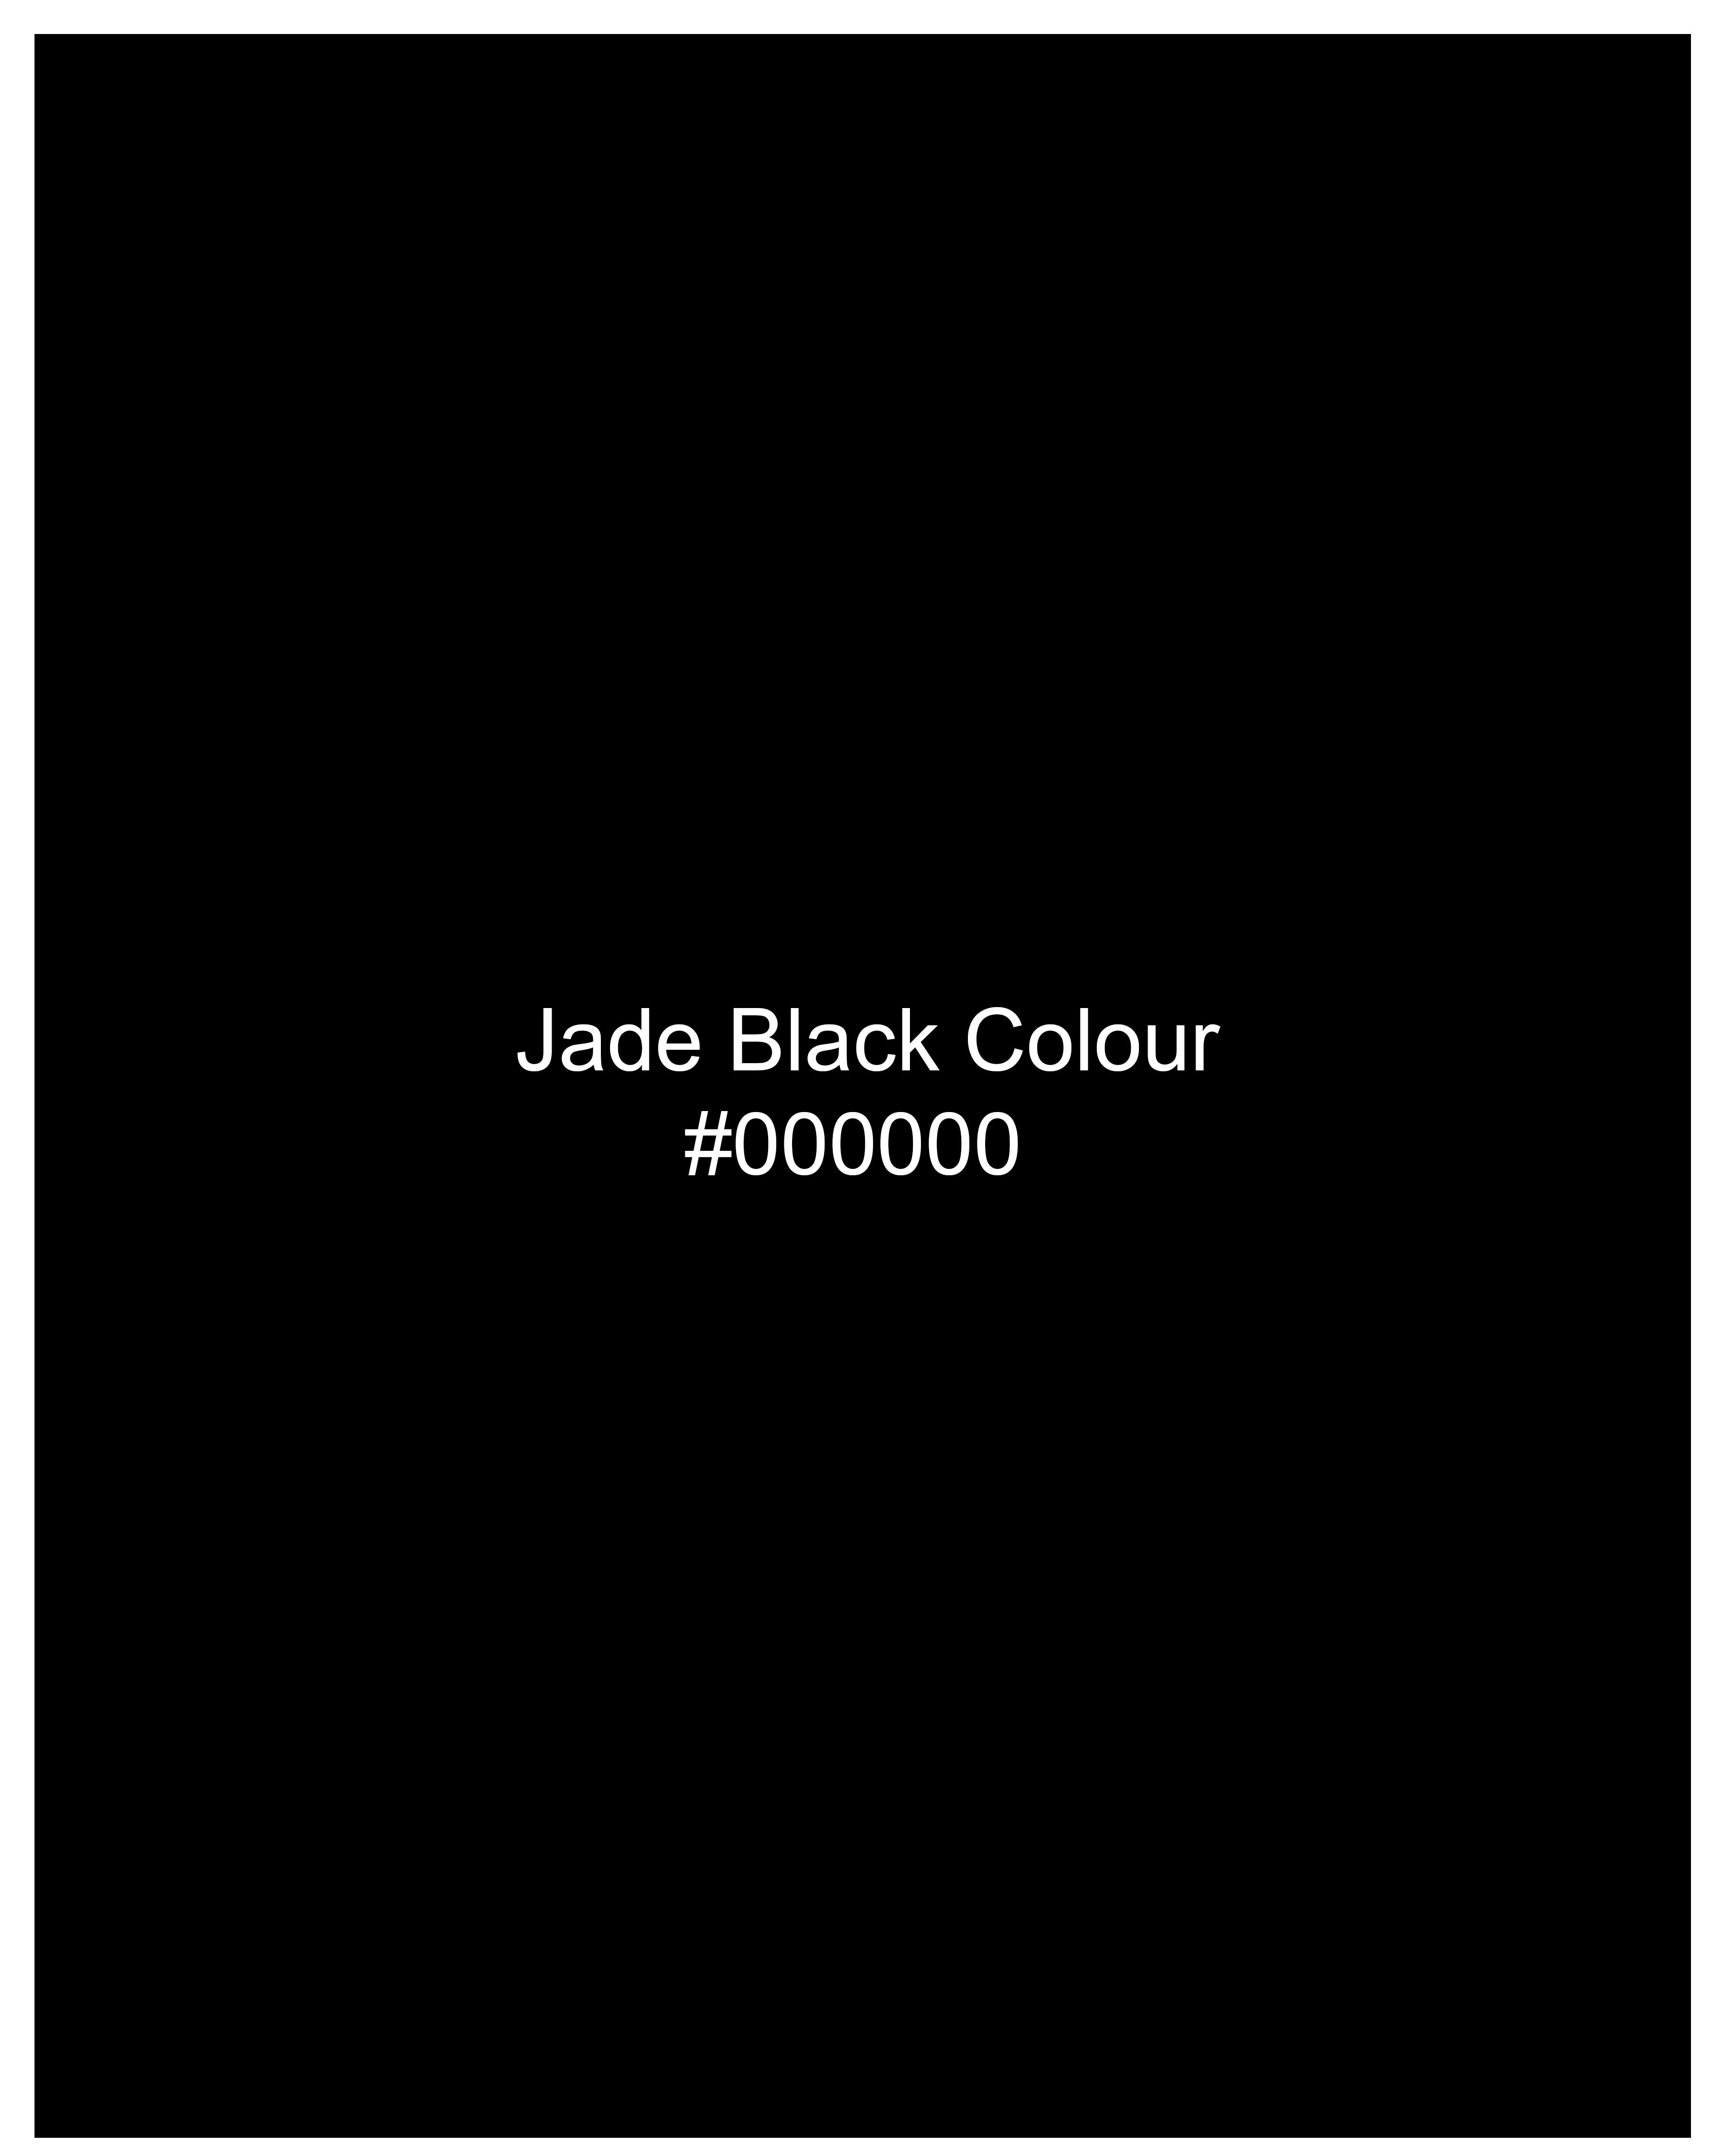 Jade Black Subtle Sheen Slight Stretch Performance Suit ST21SB-36, ST21SB-38, ST21SB-40, ST21SB-42, ST21SB-44, ST21SB-46, ST21SB-48, ST21SB-50, ST21SB-52, ST21SB-54, ST21SB-56, ST21SB-58, ST21SB-60